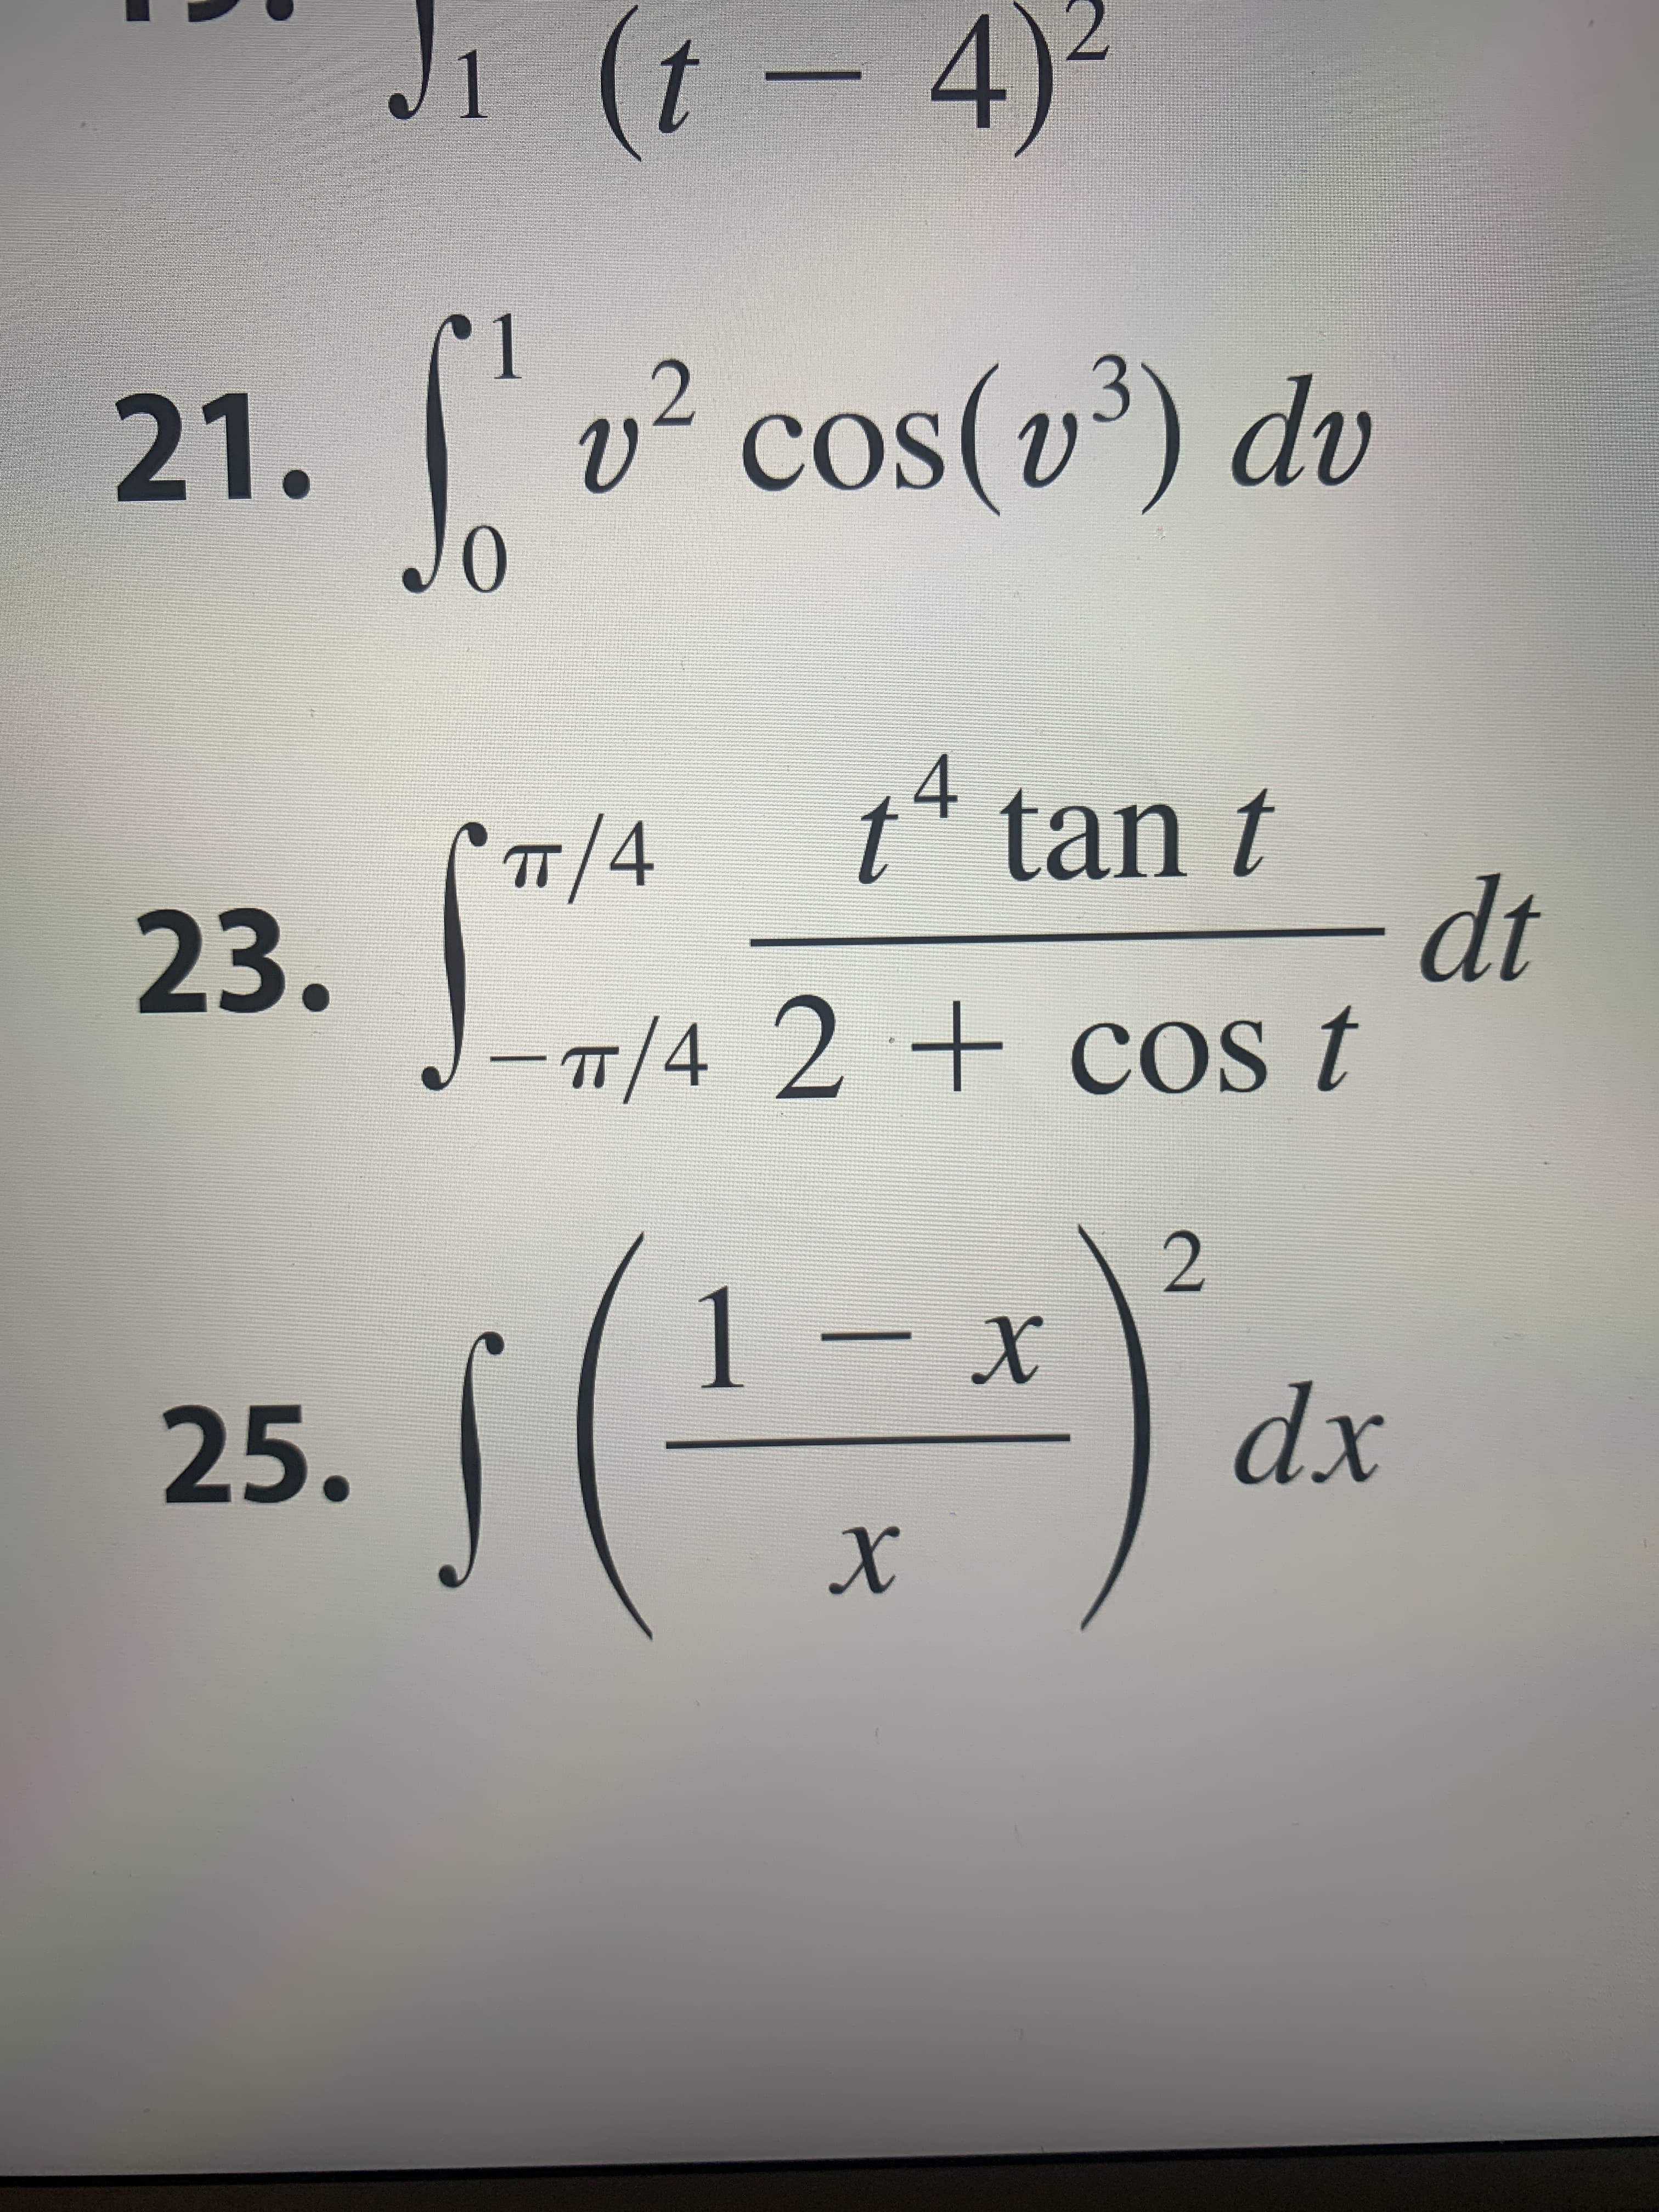 Ji (t 4)
11
v2 cos(v3) dv
21.
Jo
COS
t tan t
dt
-T/4 2+cOs t
4
TT 4
23.
- x
2
1
X
dx
25.
